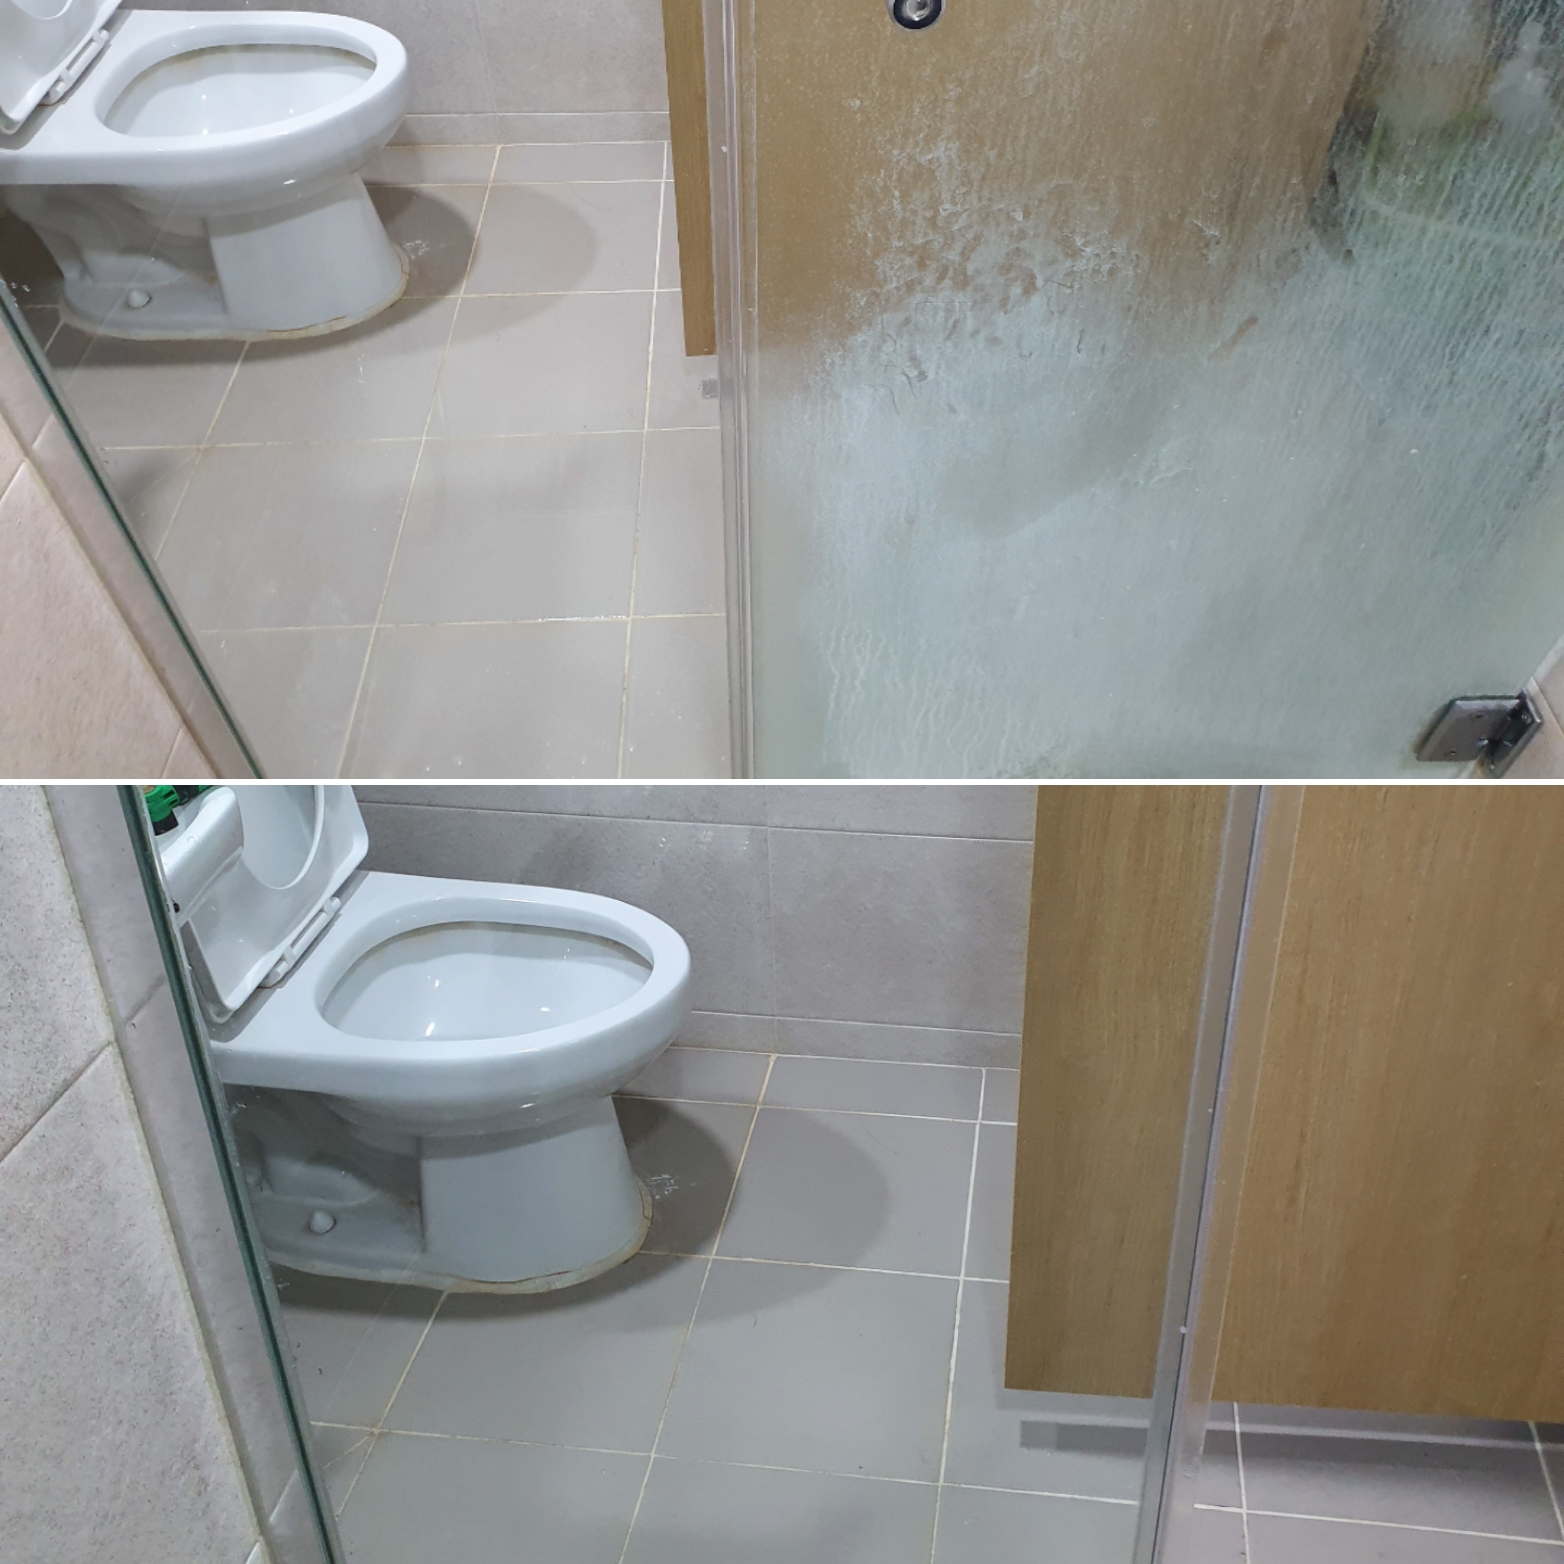 화장실 샤워 부스 유리벽 청소 전과 후의 비교사진